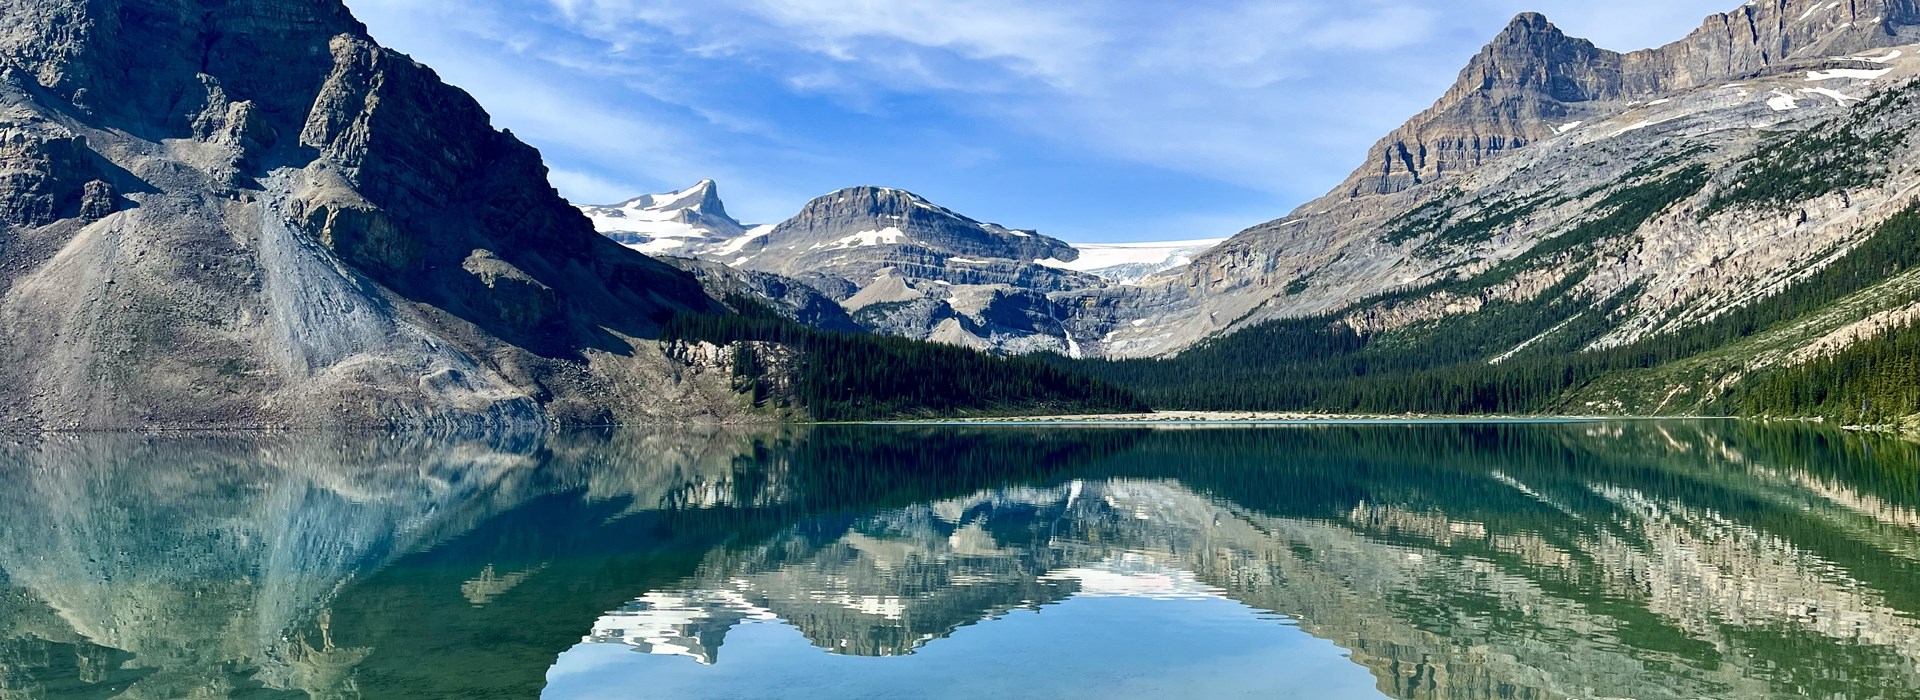 Les plus beaux lac de l'ouest canadien